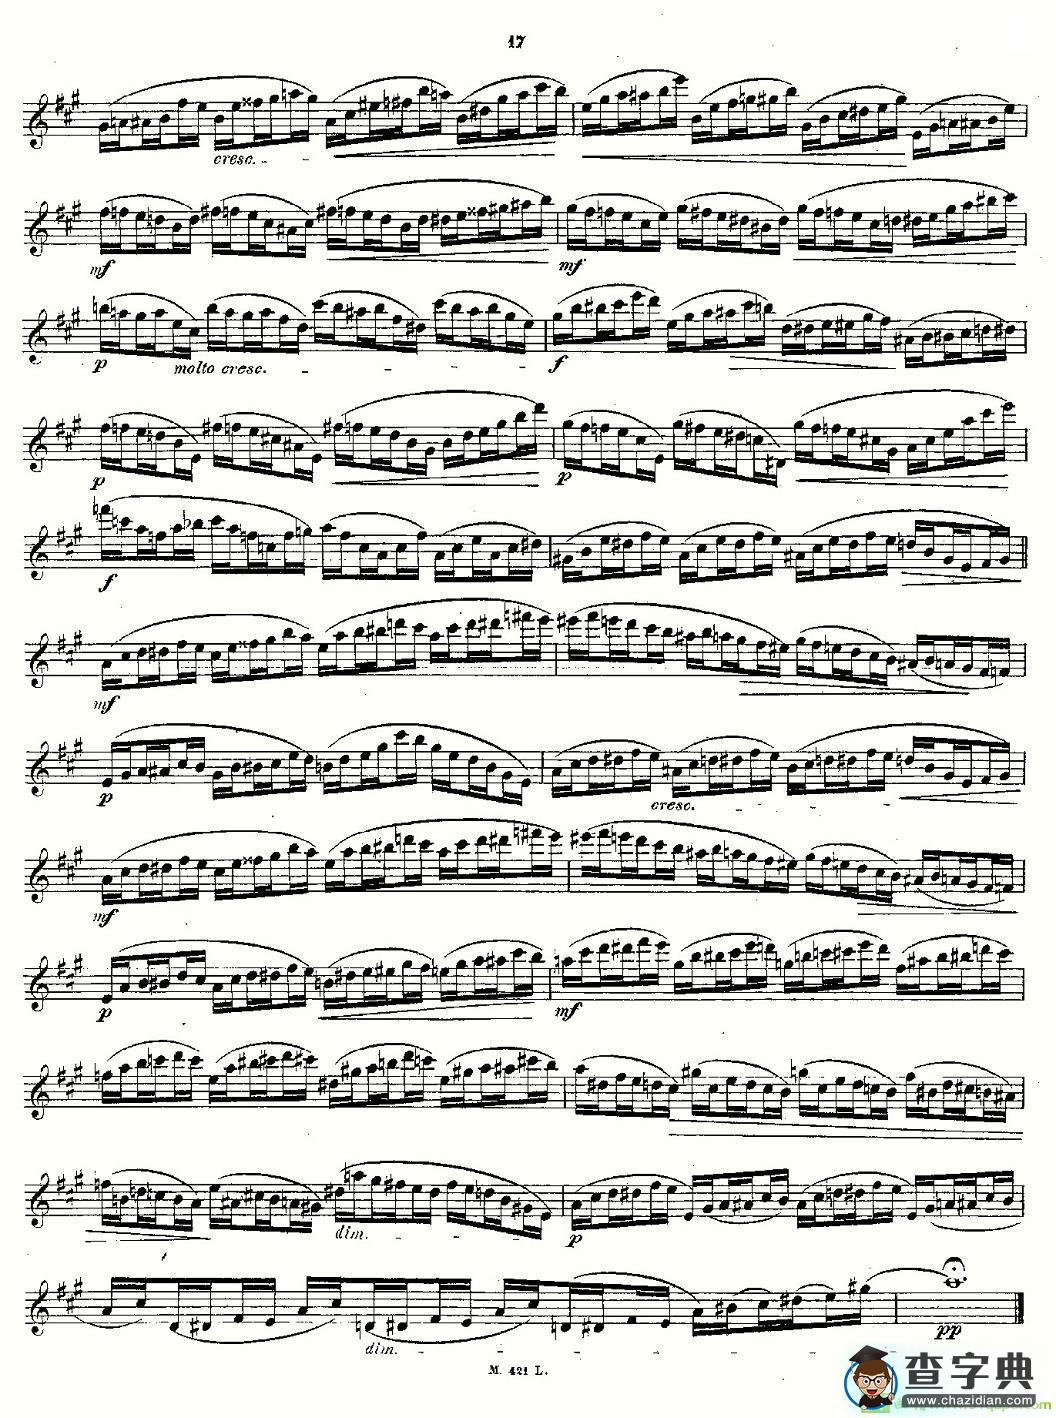 24首长笛练习曲 Op.15 之6—10长笛谱(Andersen作曲)